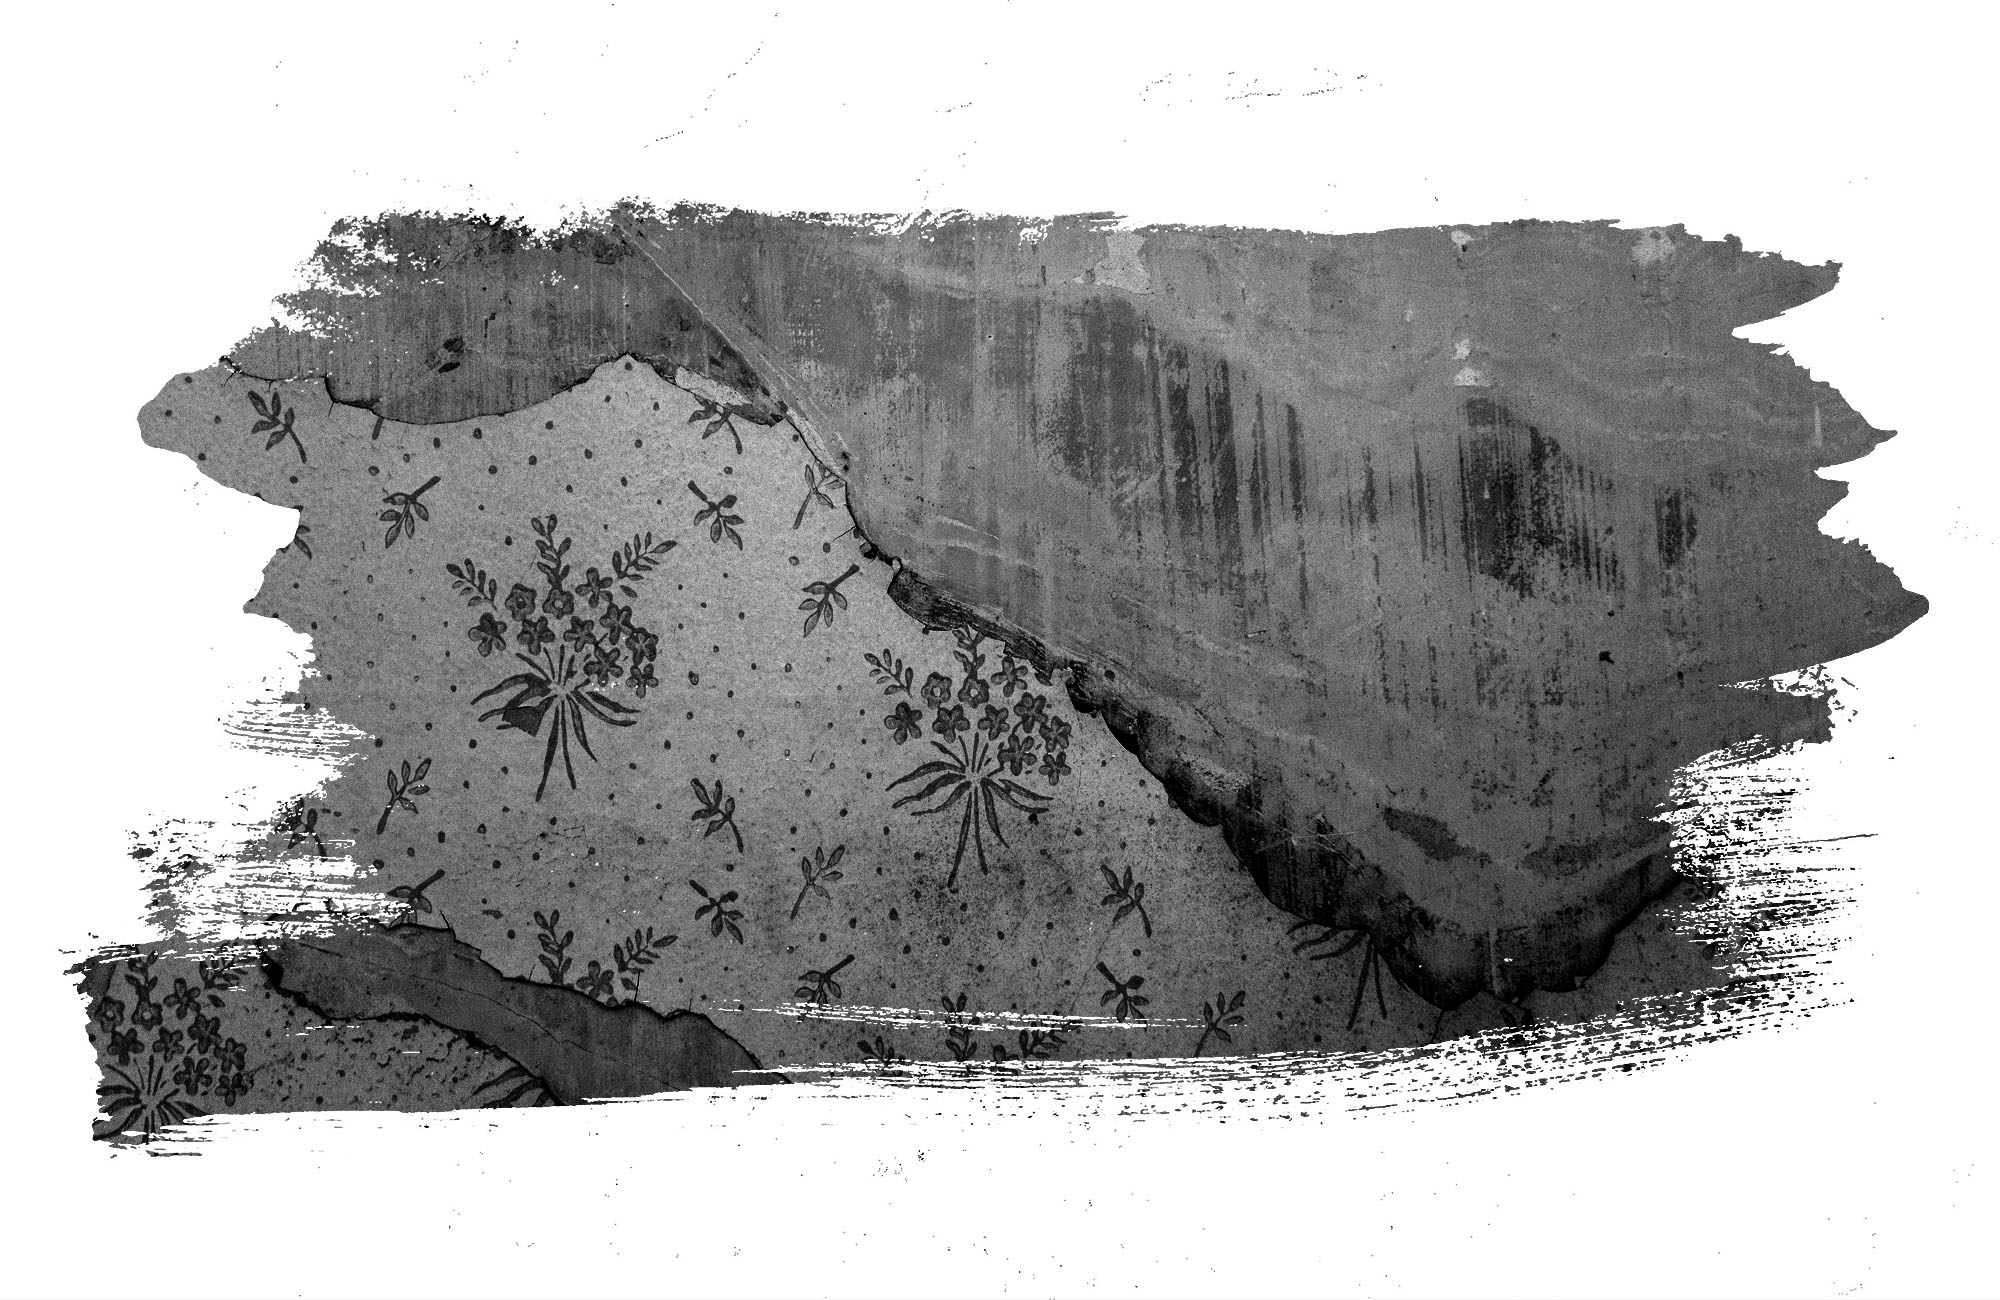 Hintergrundbild einer abgerissenen tapete. Zur Verfügung gestellt von Unsplash